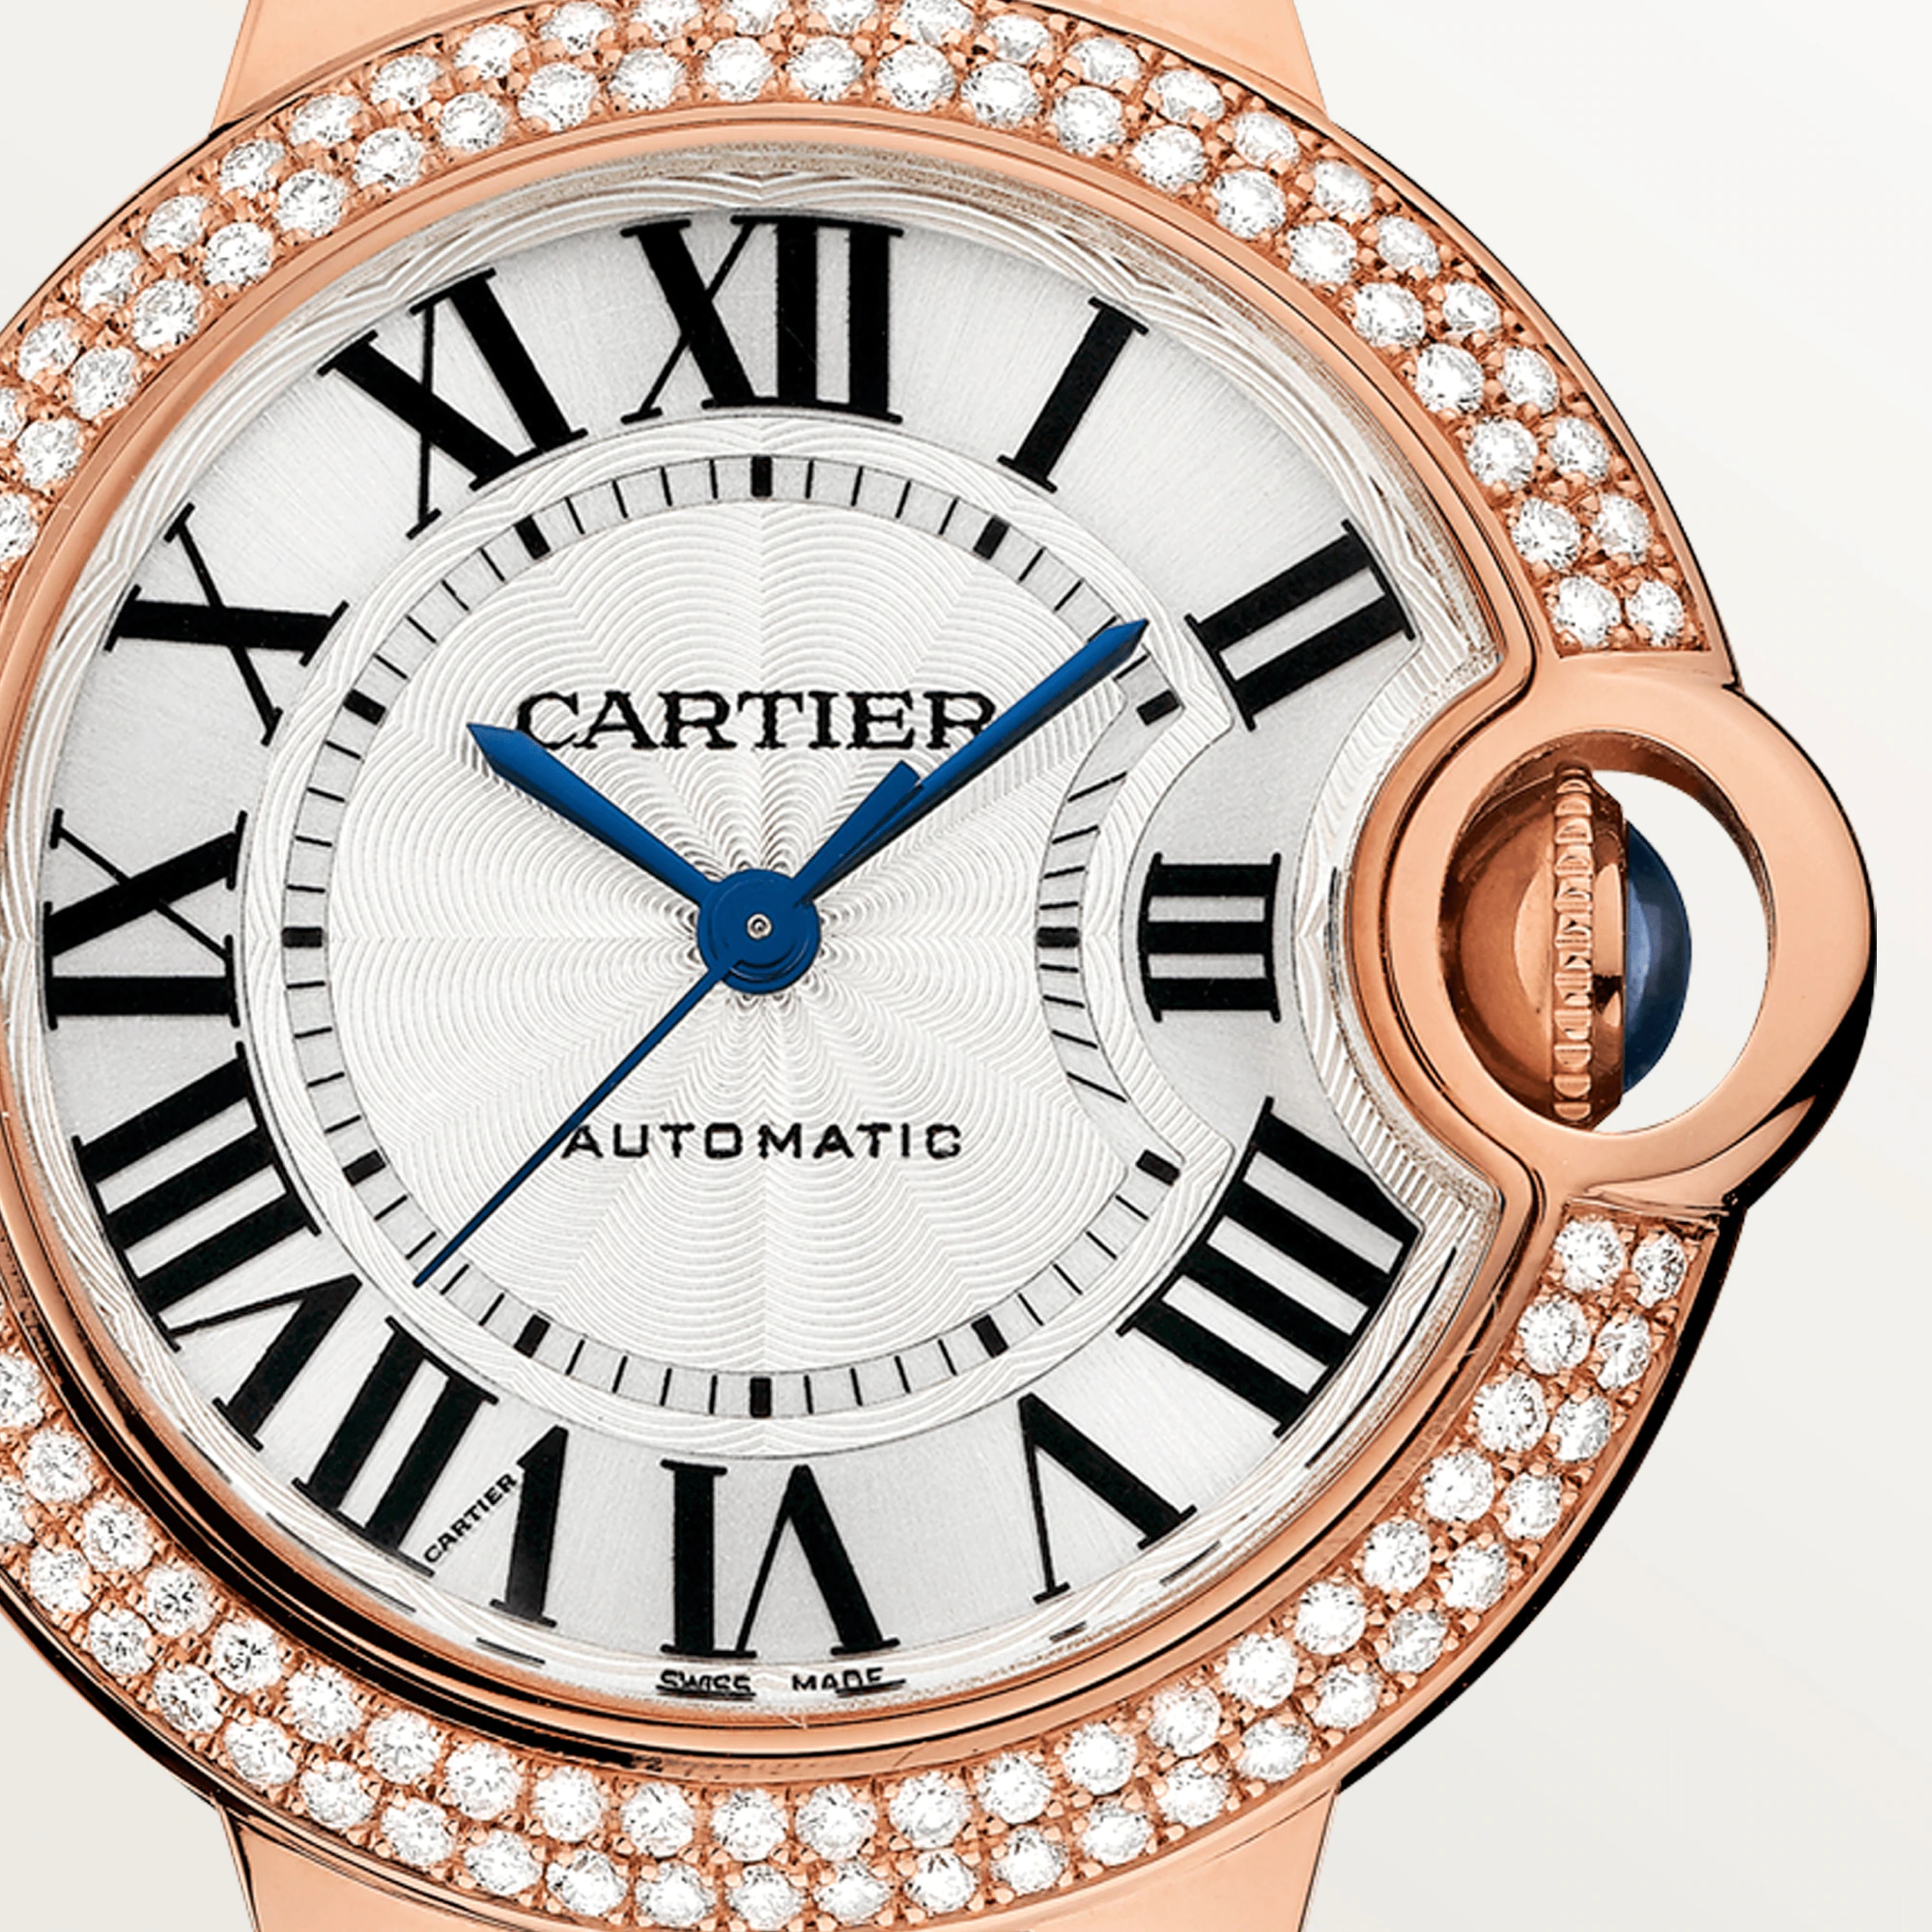 Cartier Ballon Bleu 33mm Rose Gold & Diamond Lady's Watch